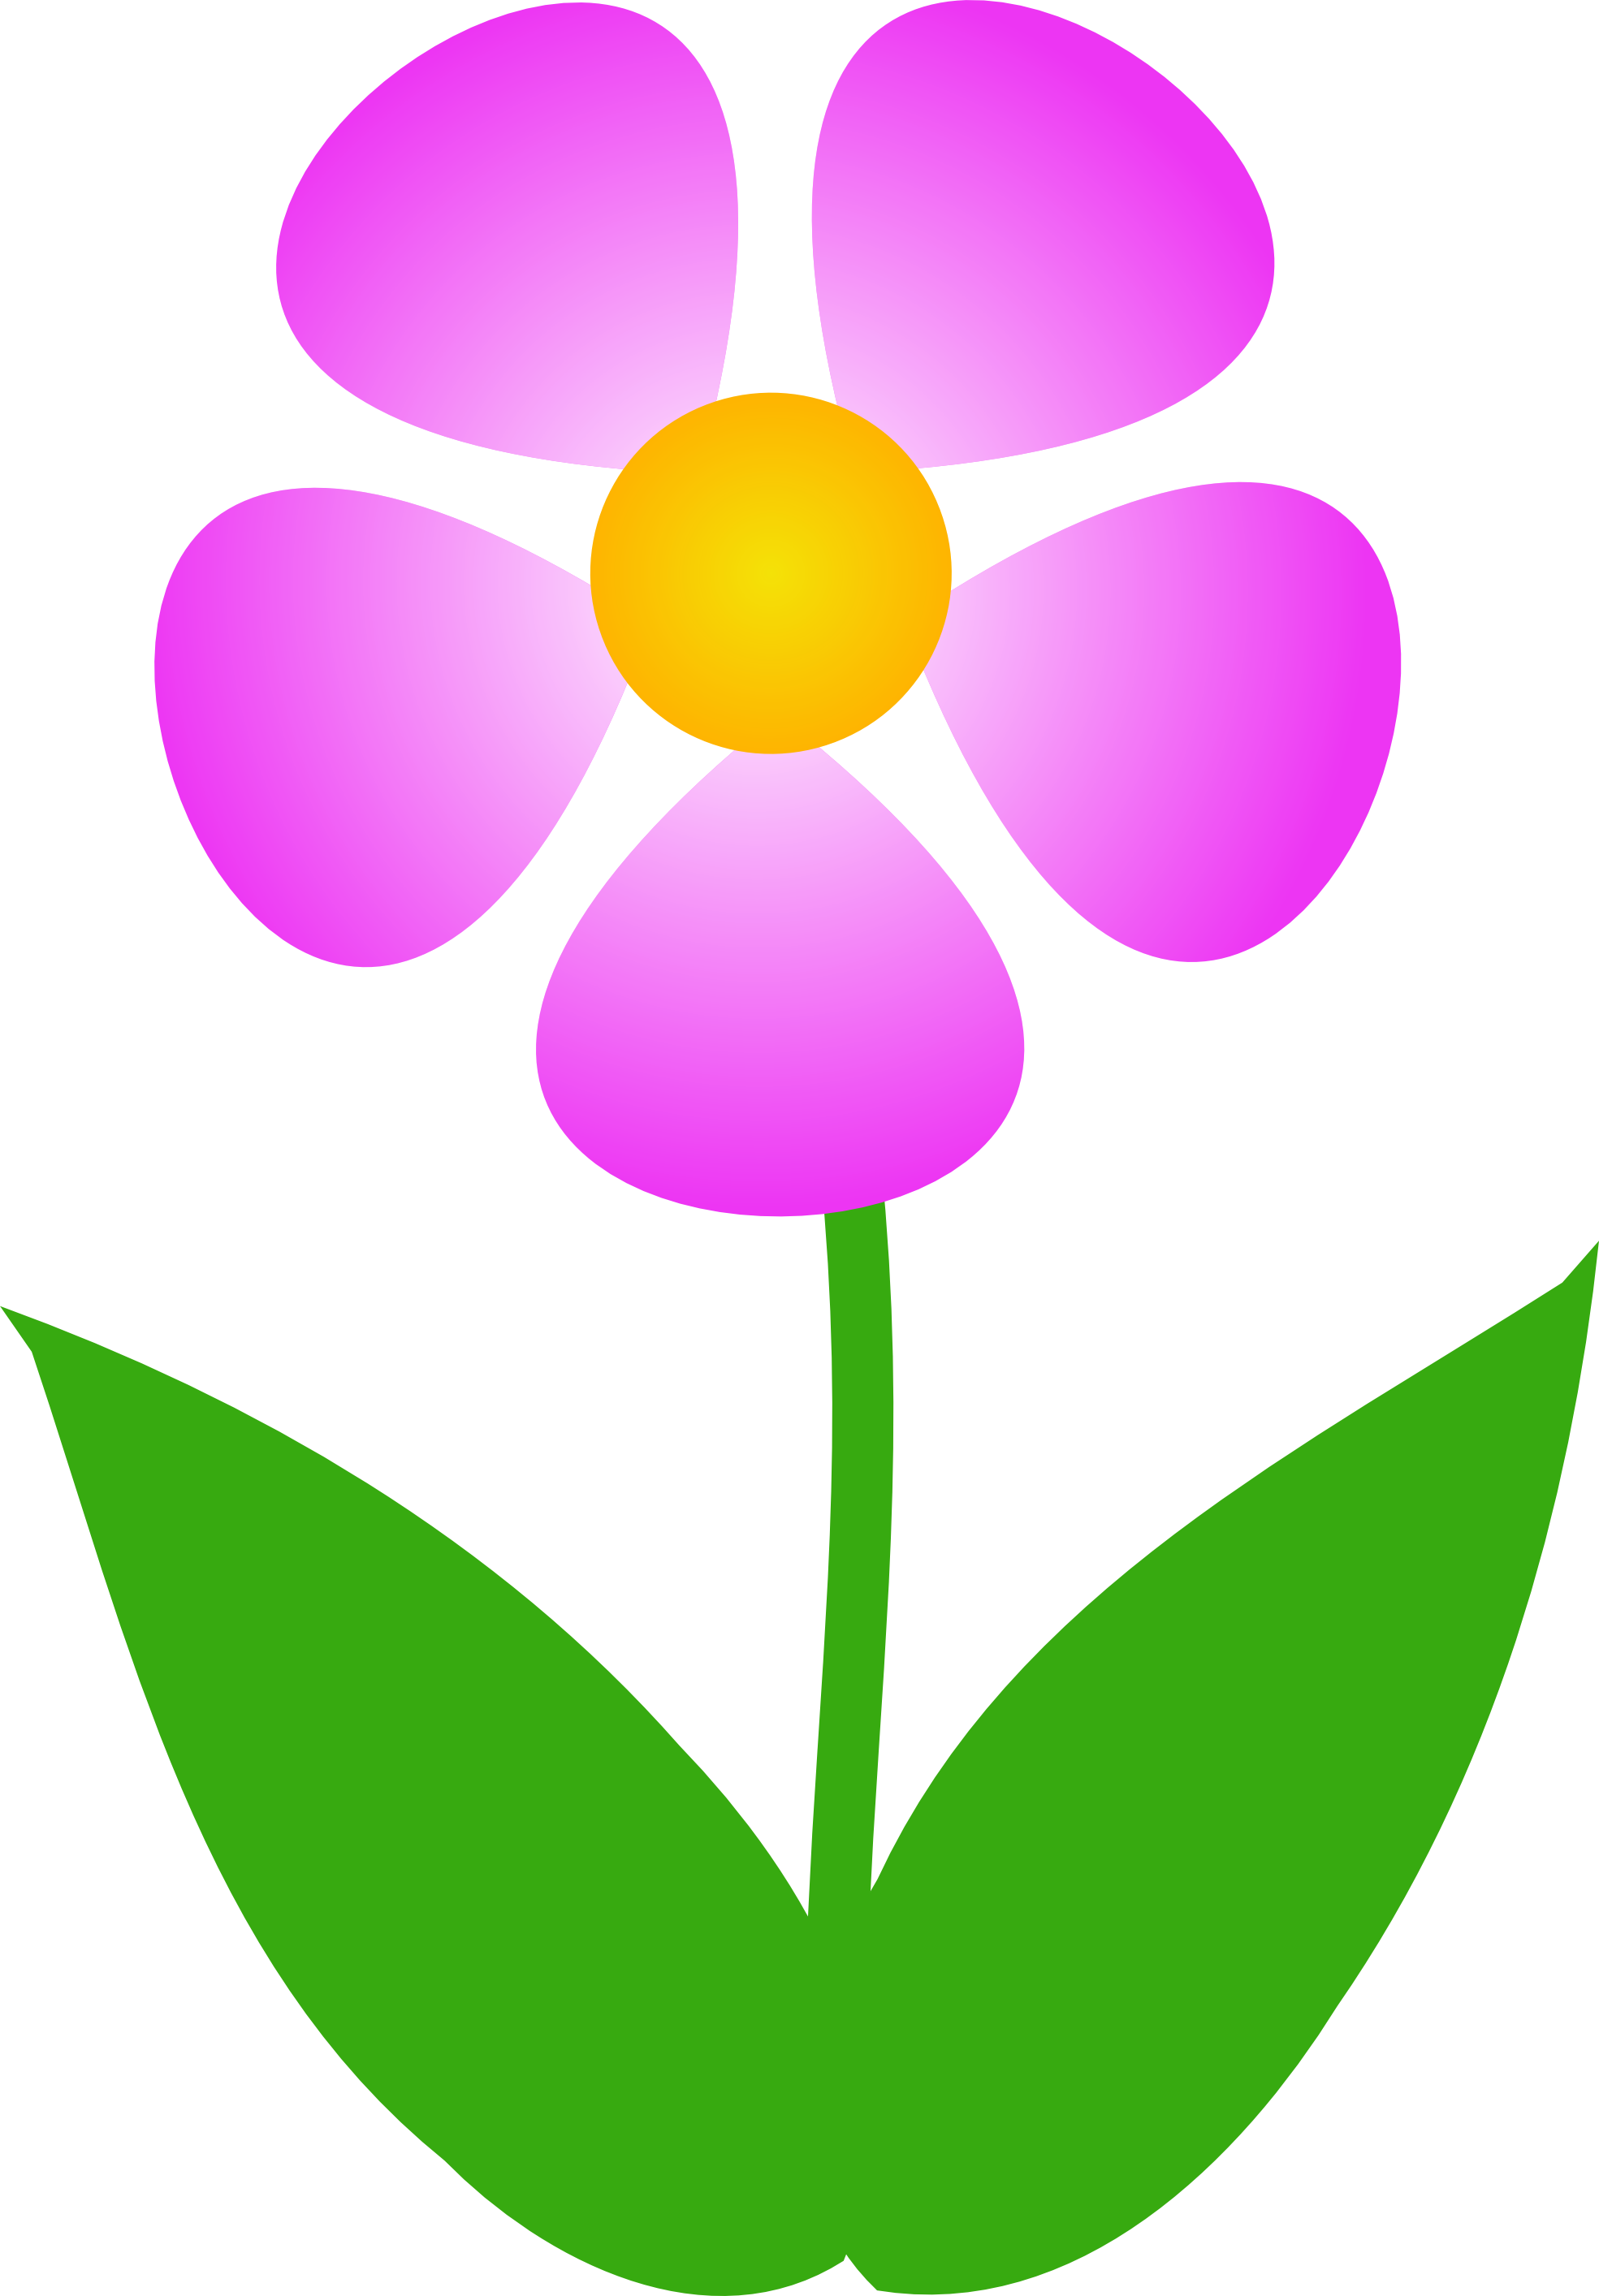 Single Flower Clipart